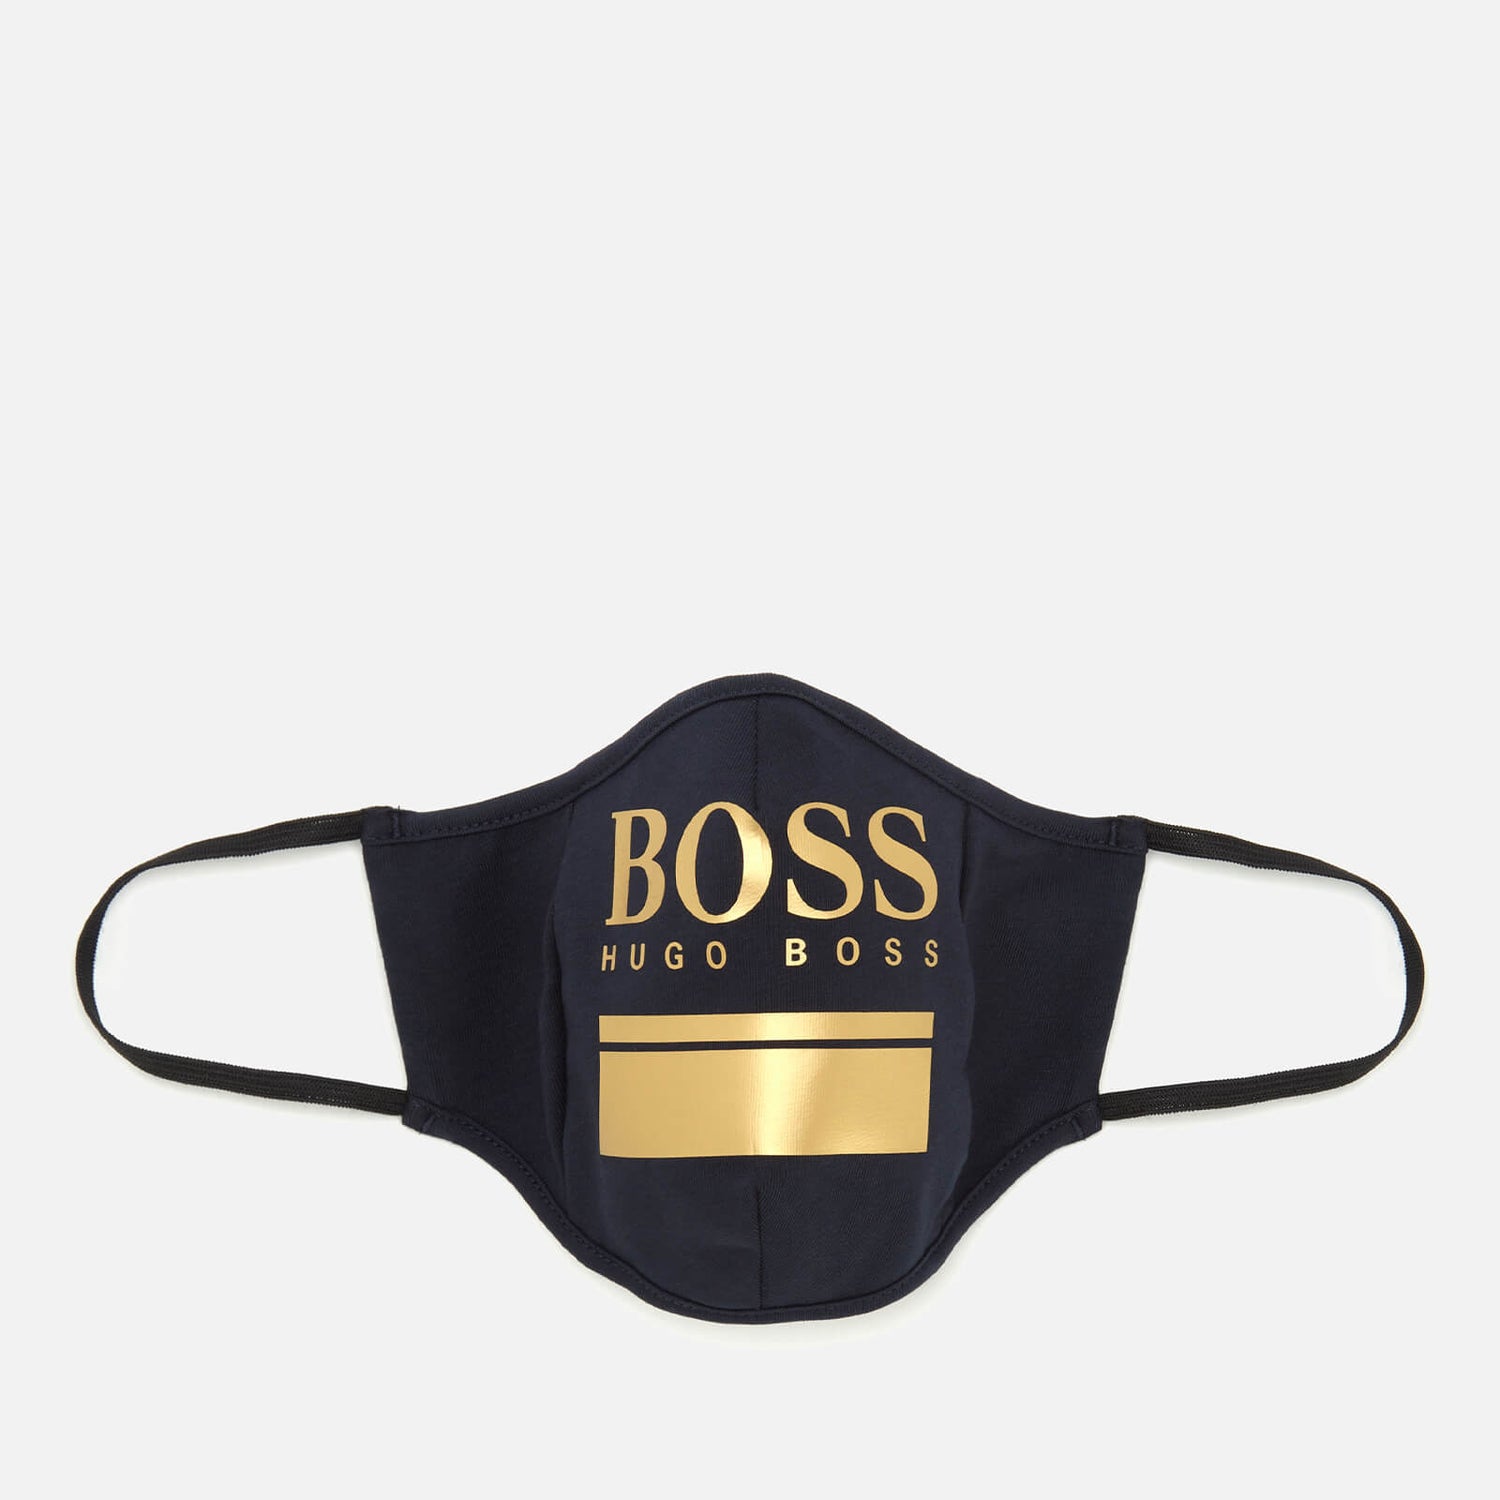 BOSS Hugo Boss Men's Gold Logo Print Face Mask - Navy/Gold